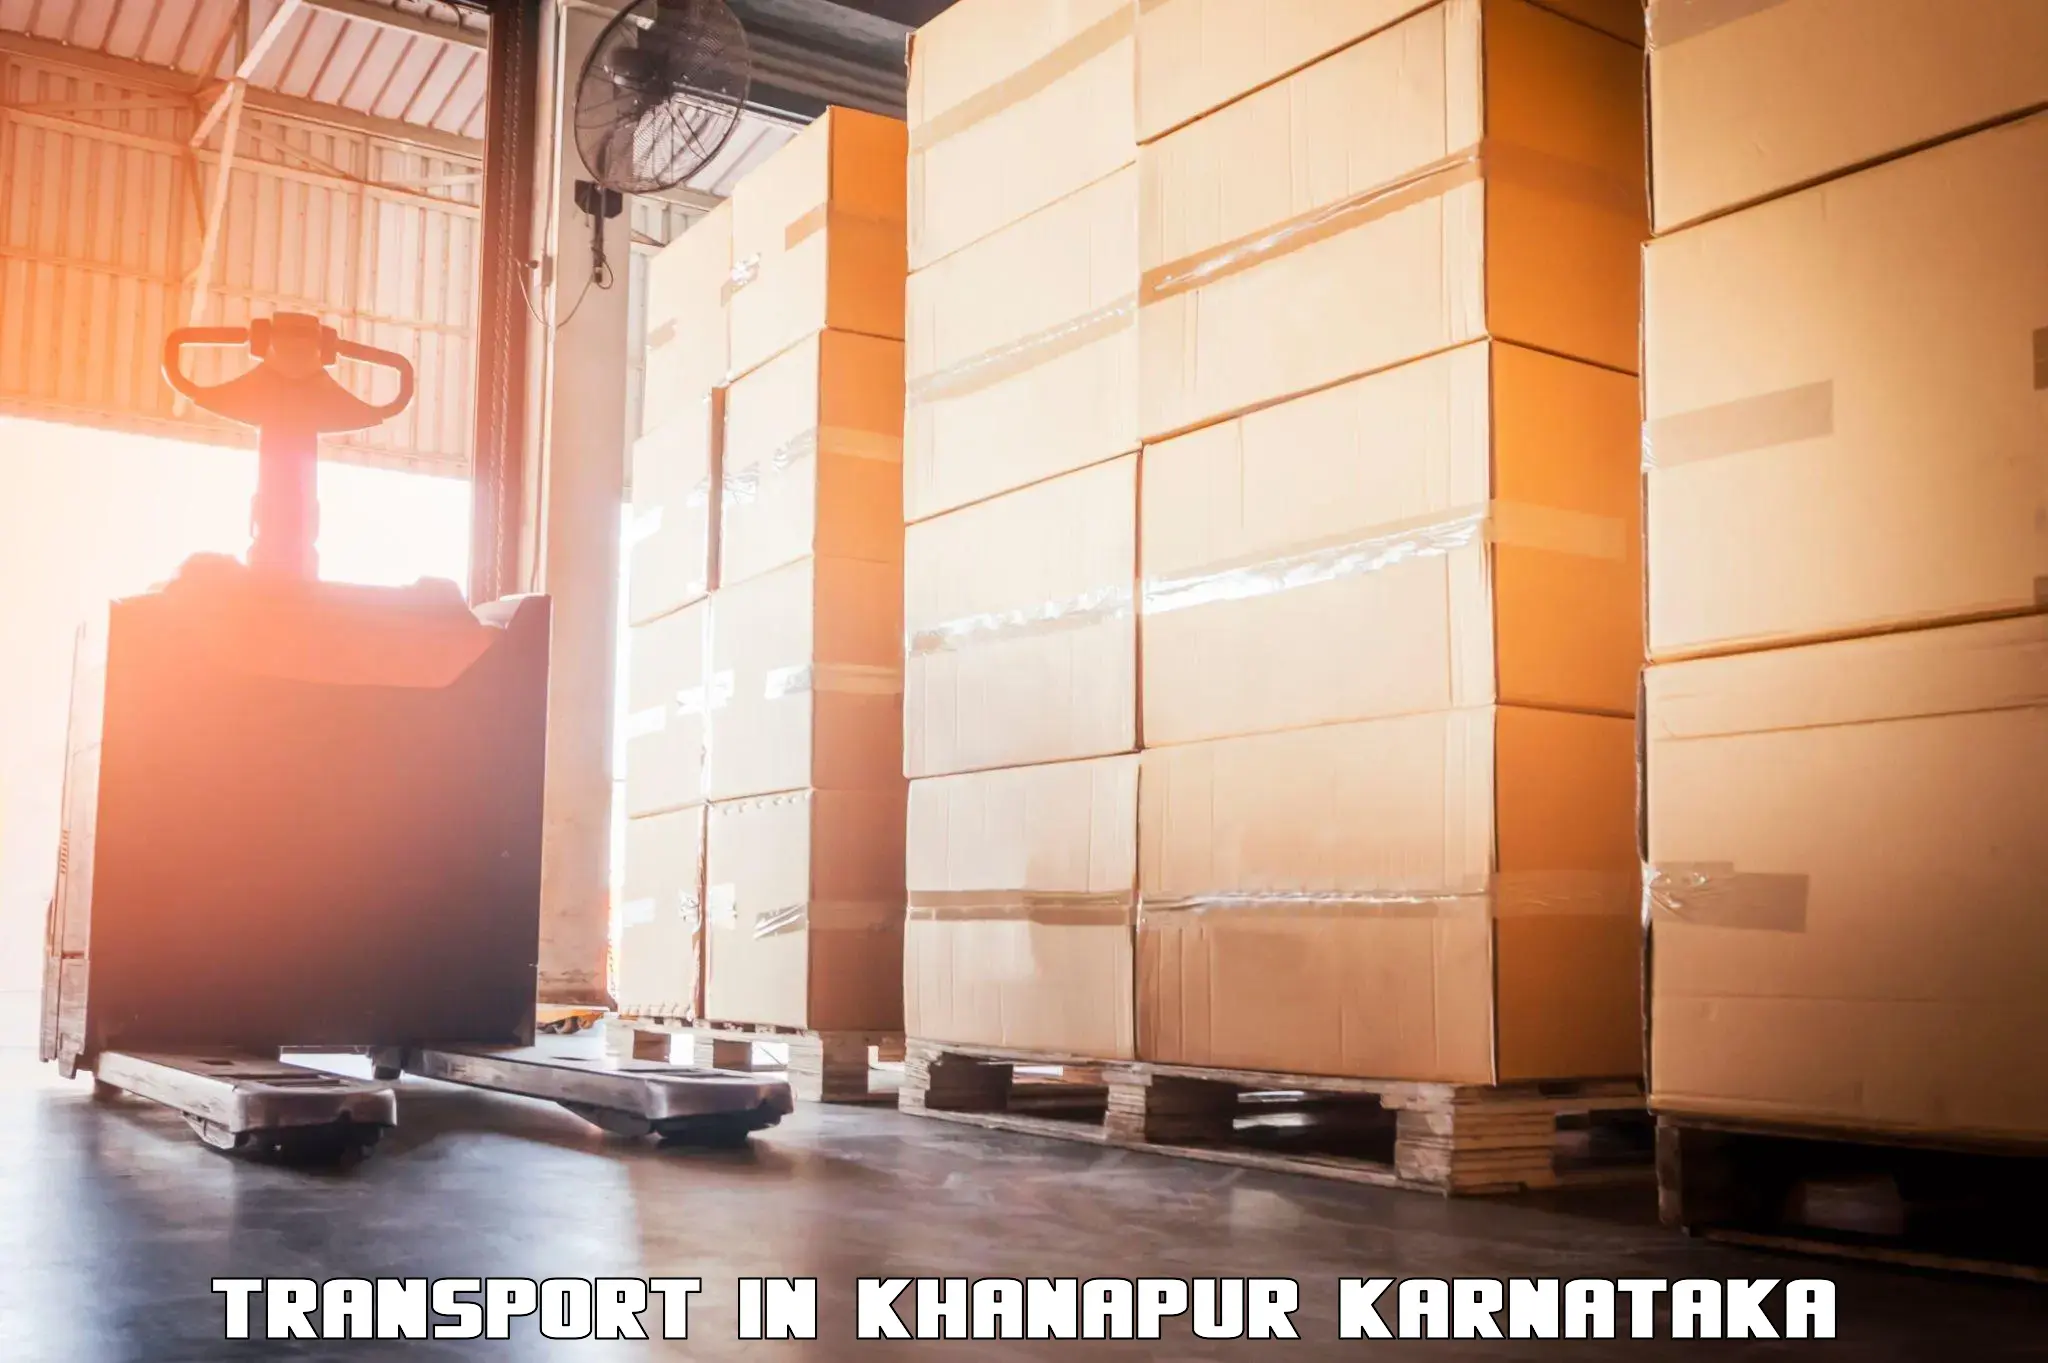 Air cargo transport services in Khanapur Karnataka